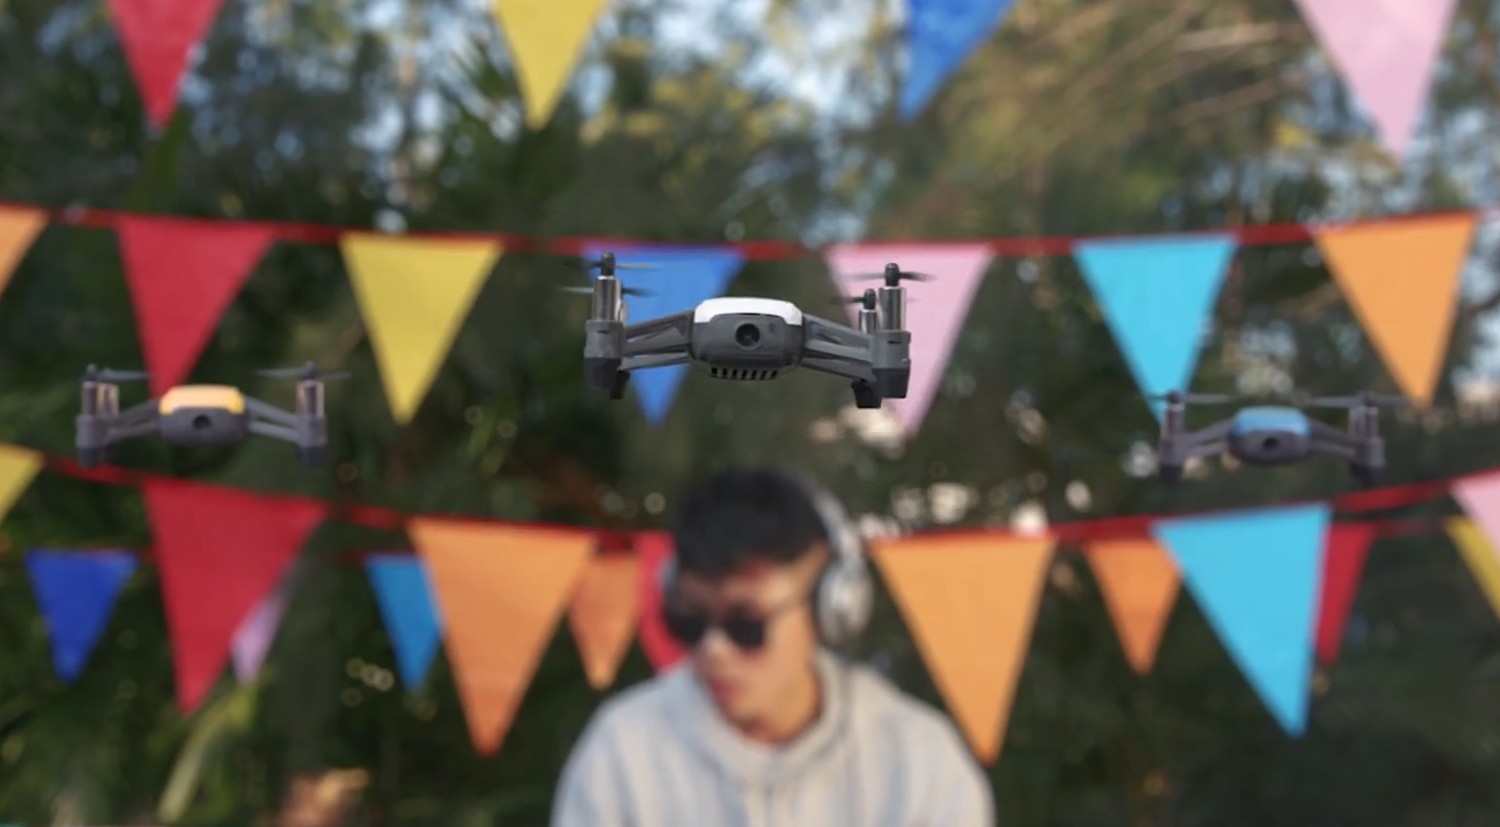 Predstavenie drona Tello